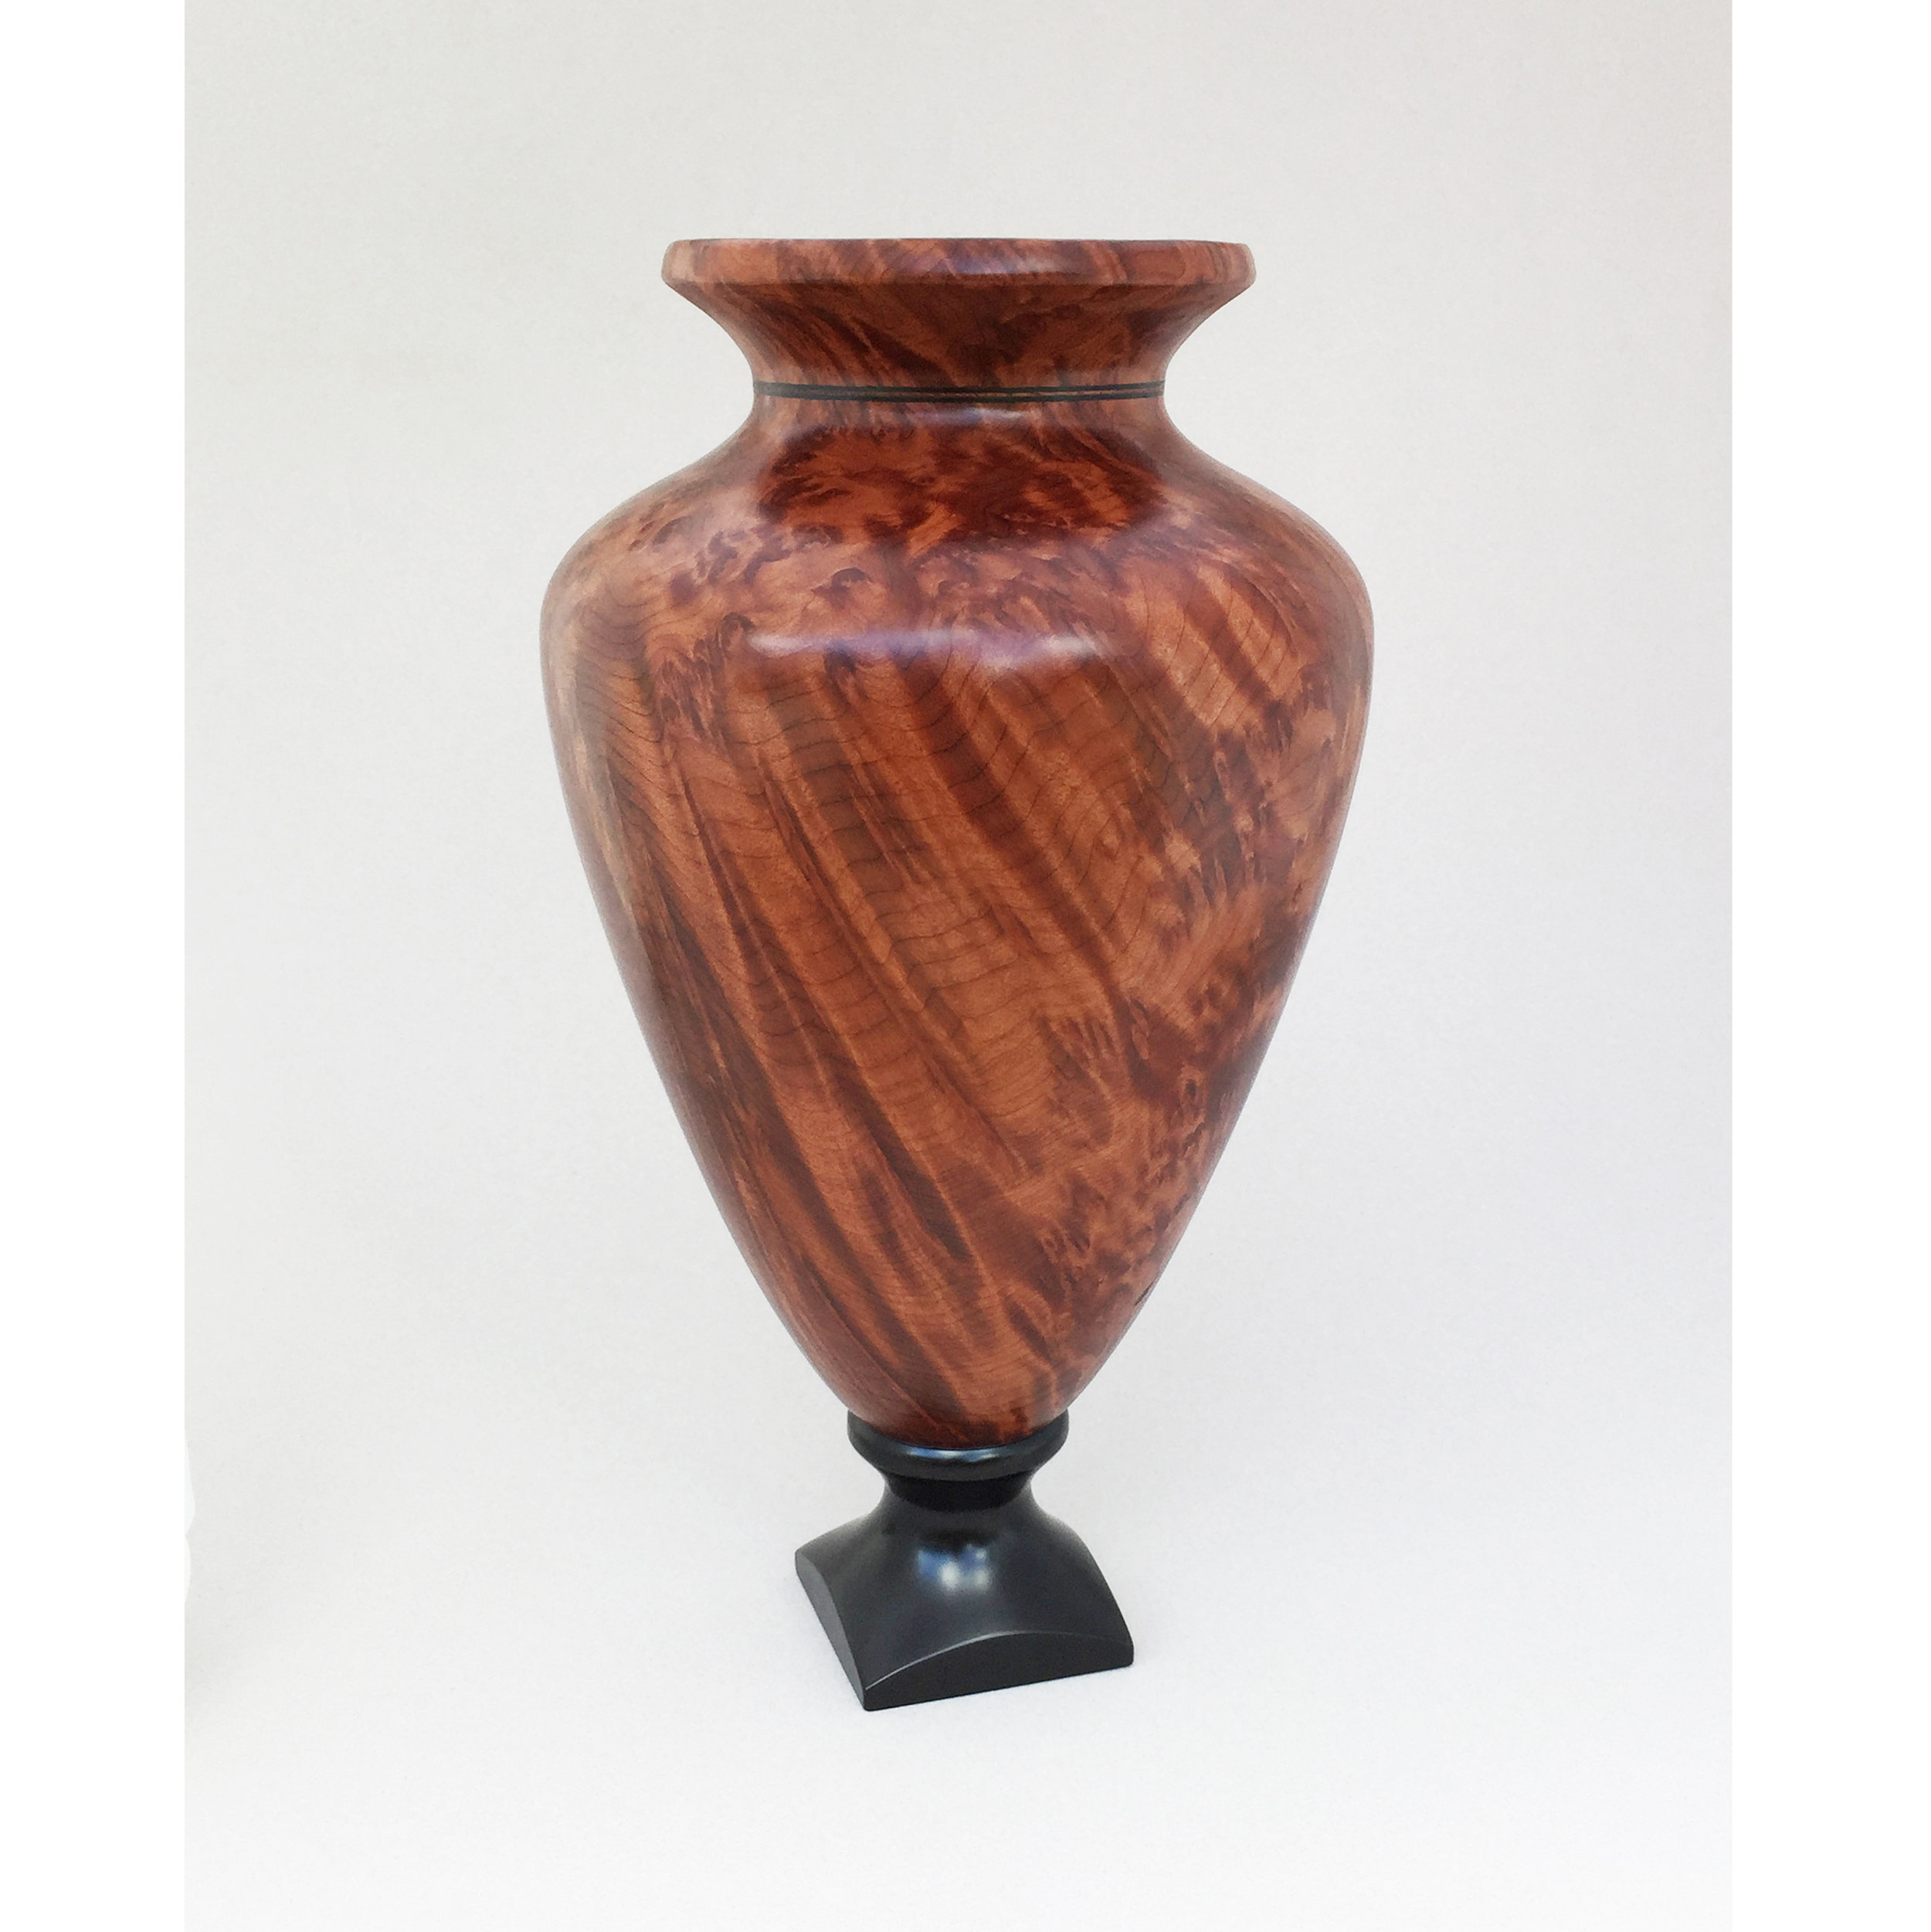 Mandela Vase - Redwood burl and African blackwood